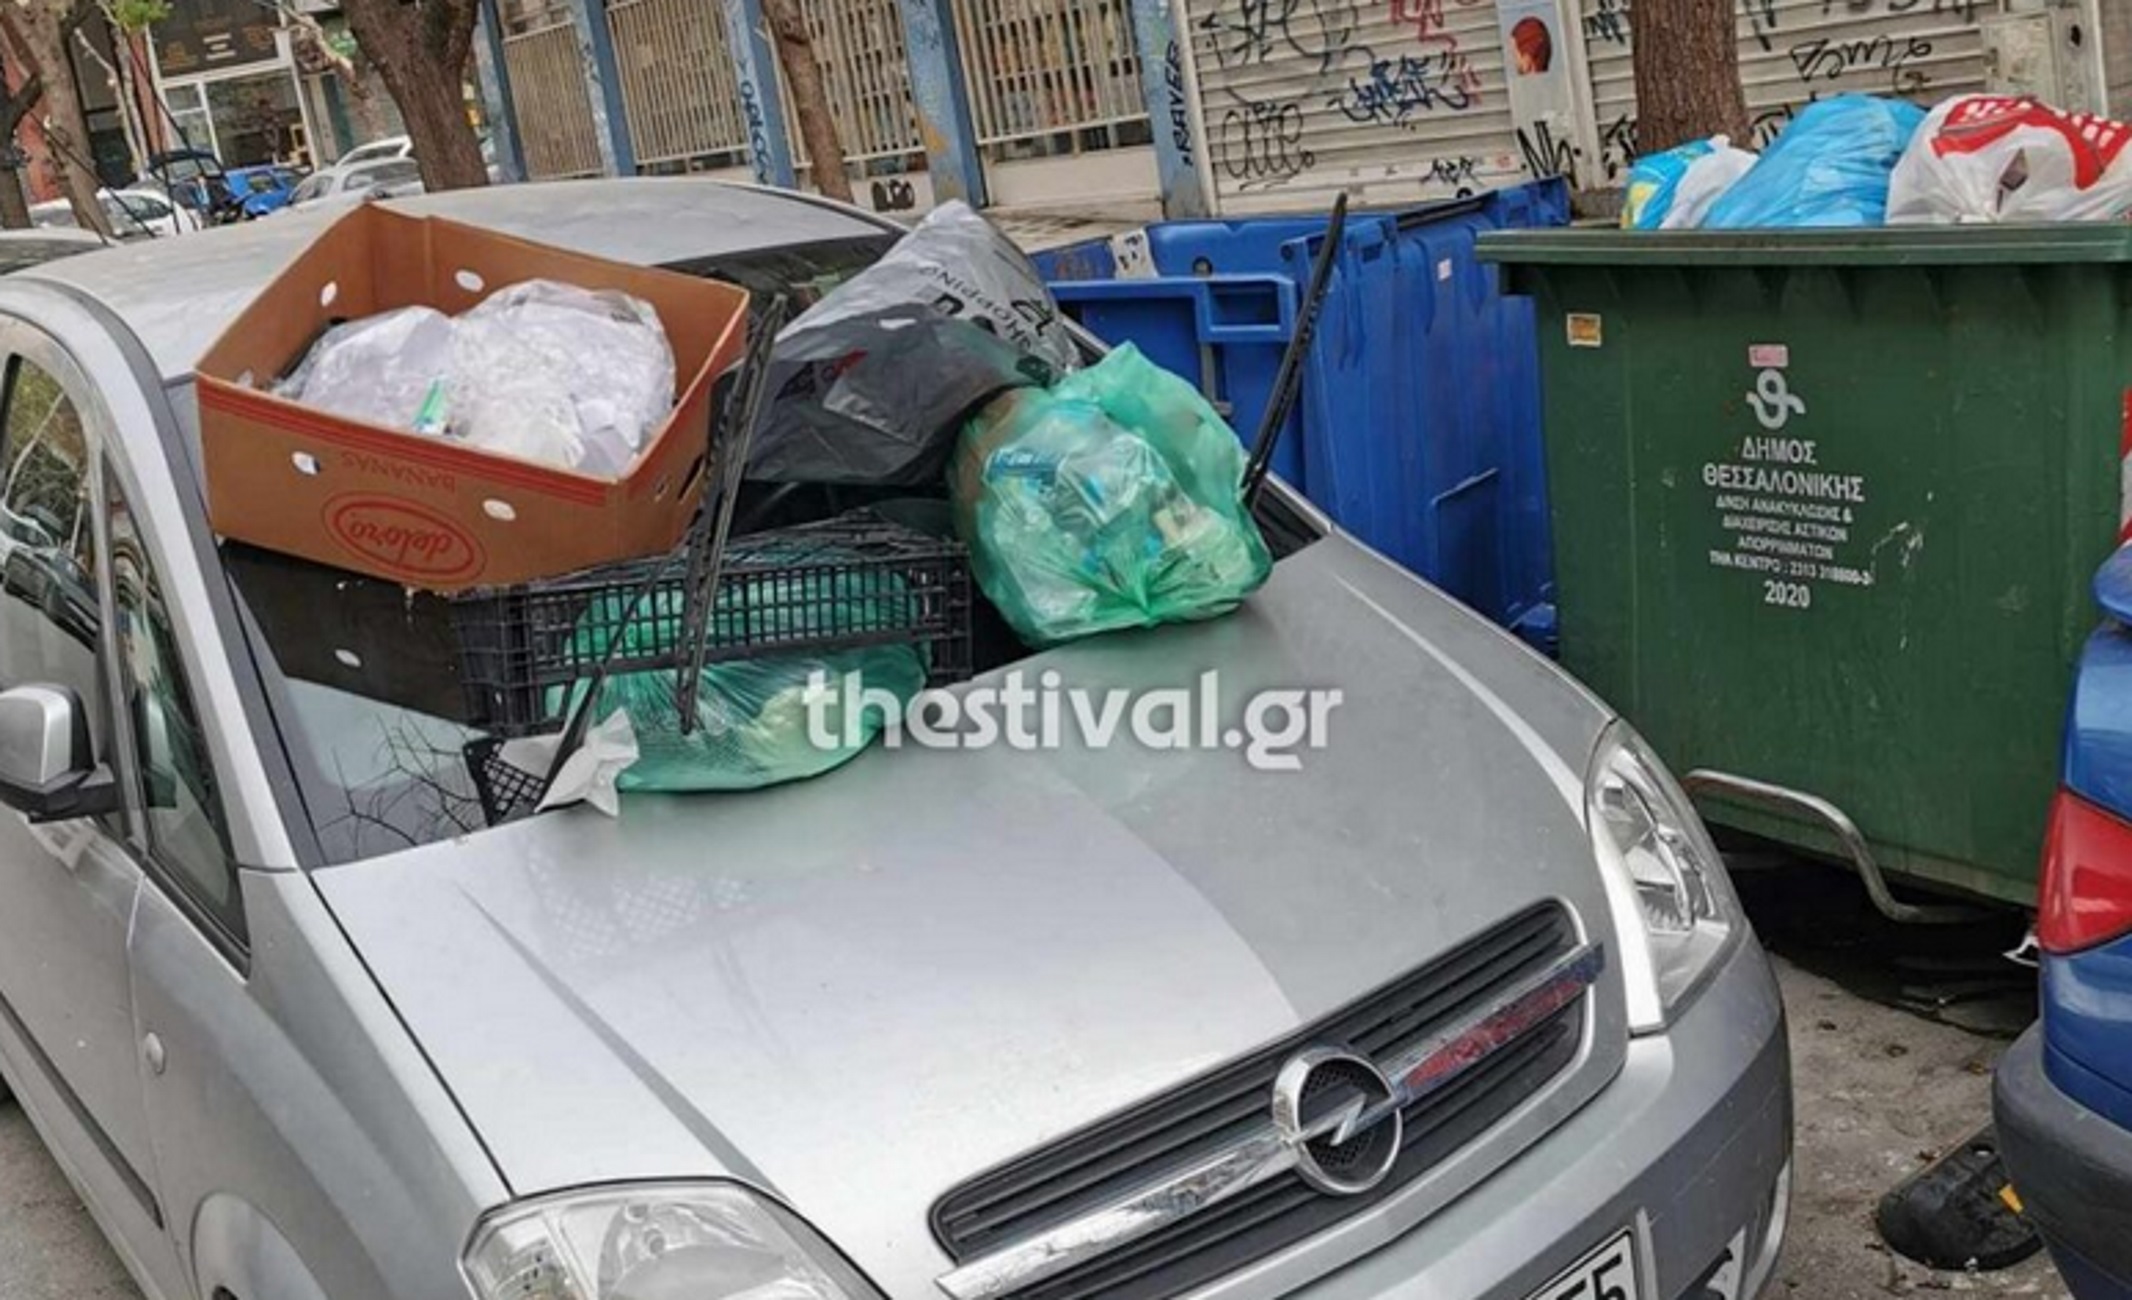 Θεσσαλονίκη: «Τιμωρία» με σκουπίδια στο αυτοκίνητο οδηγού που πάρκαρε παράνομα